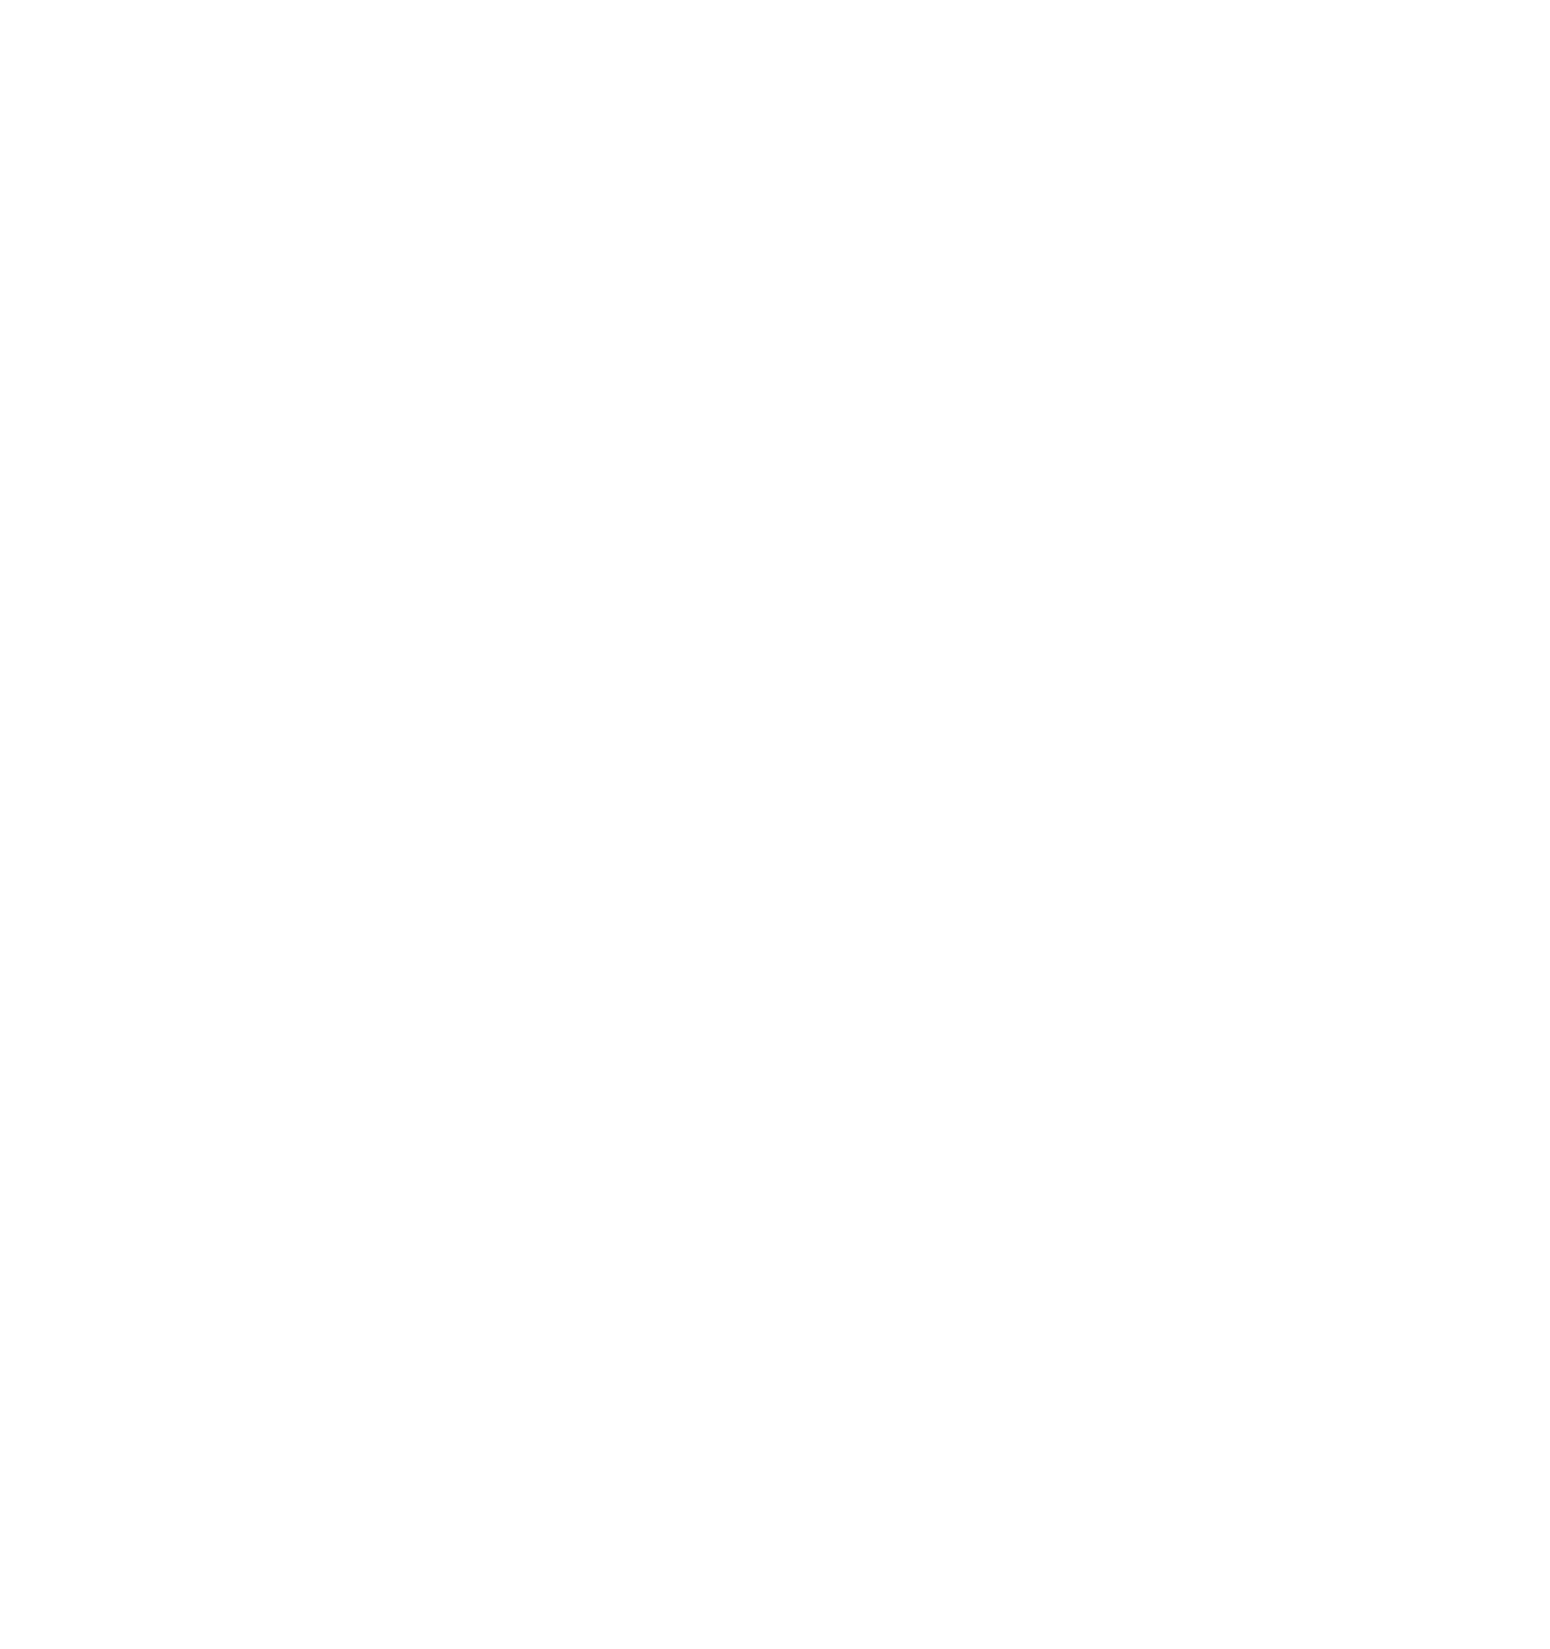 Scholar Rock Holding logo for dark backgrounds (transparent PNG)